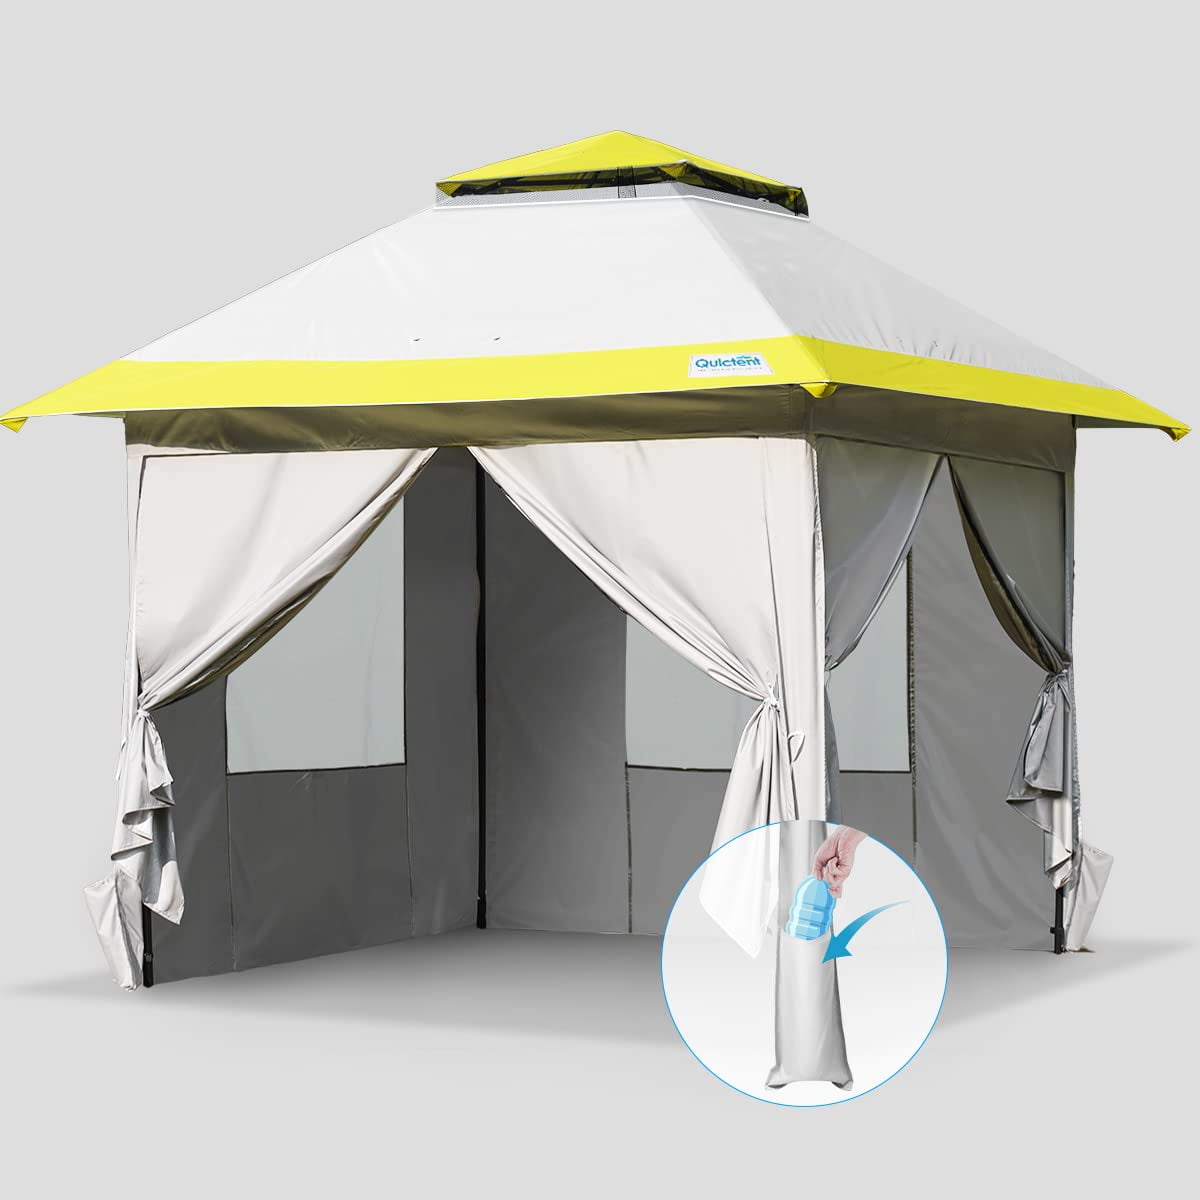 10'x10' Heavy Duty Canopy Party Tent Gazebo 4 Side Walls Waterproof Oxford Cloth 